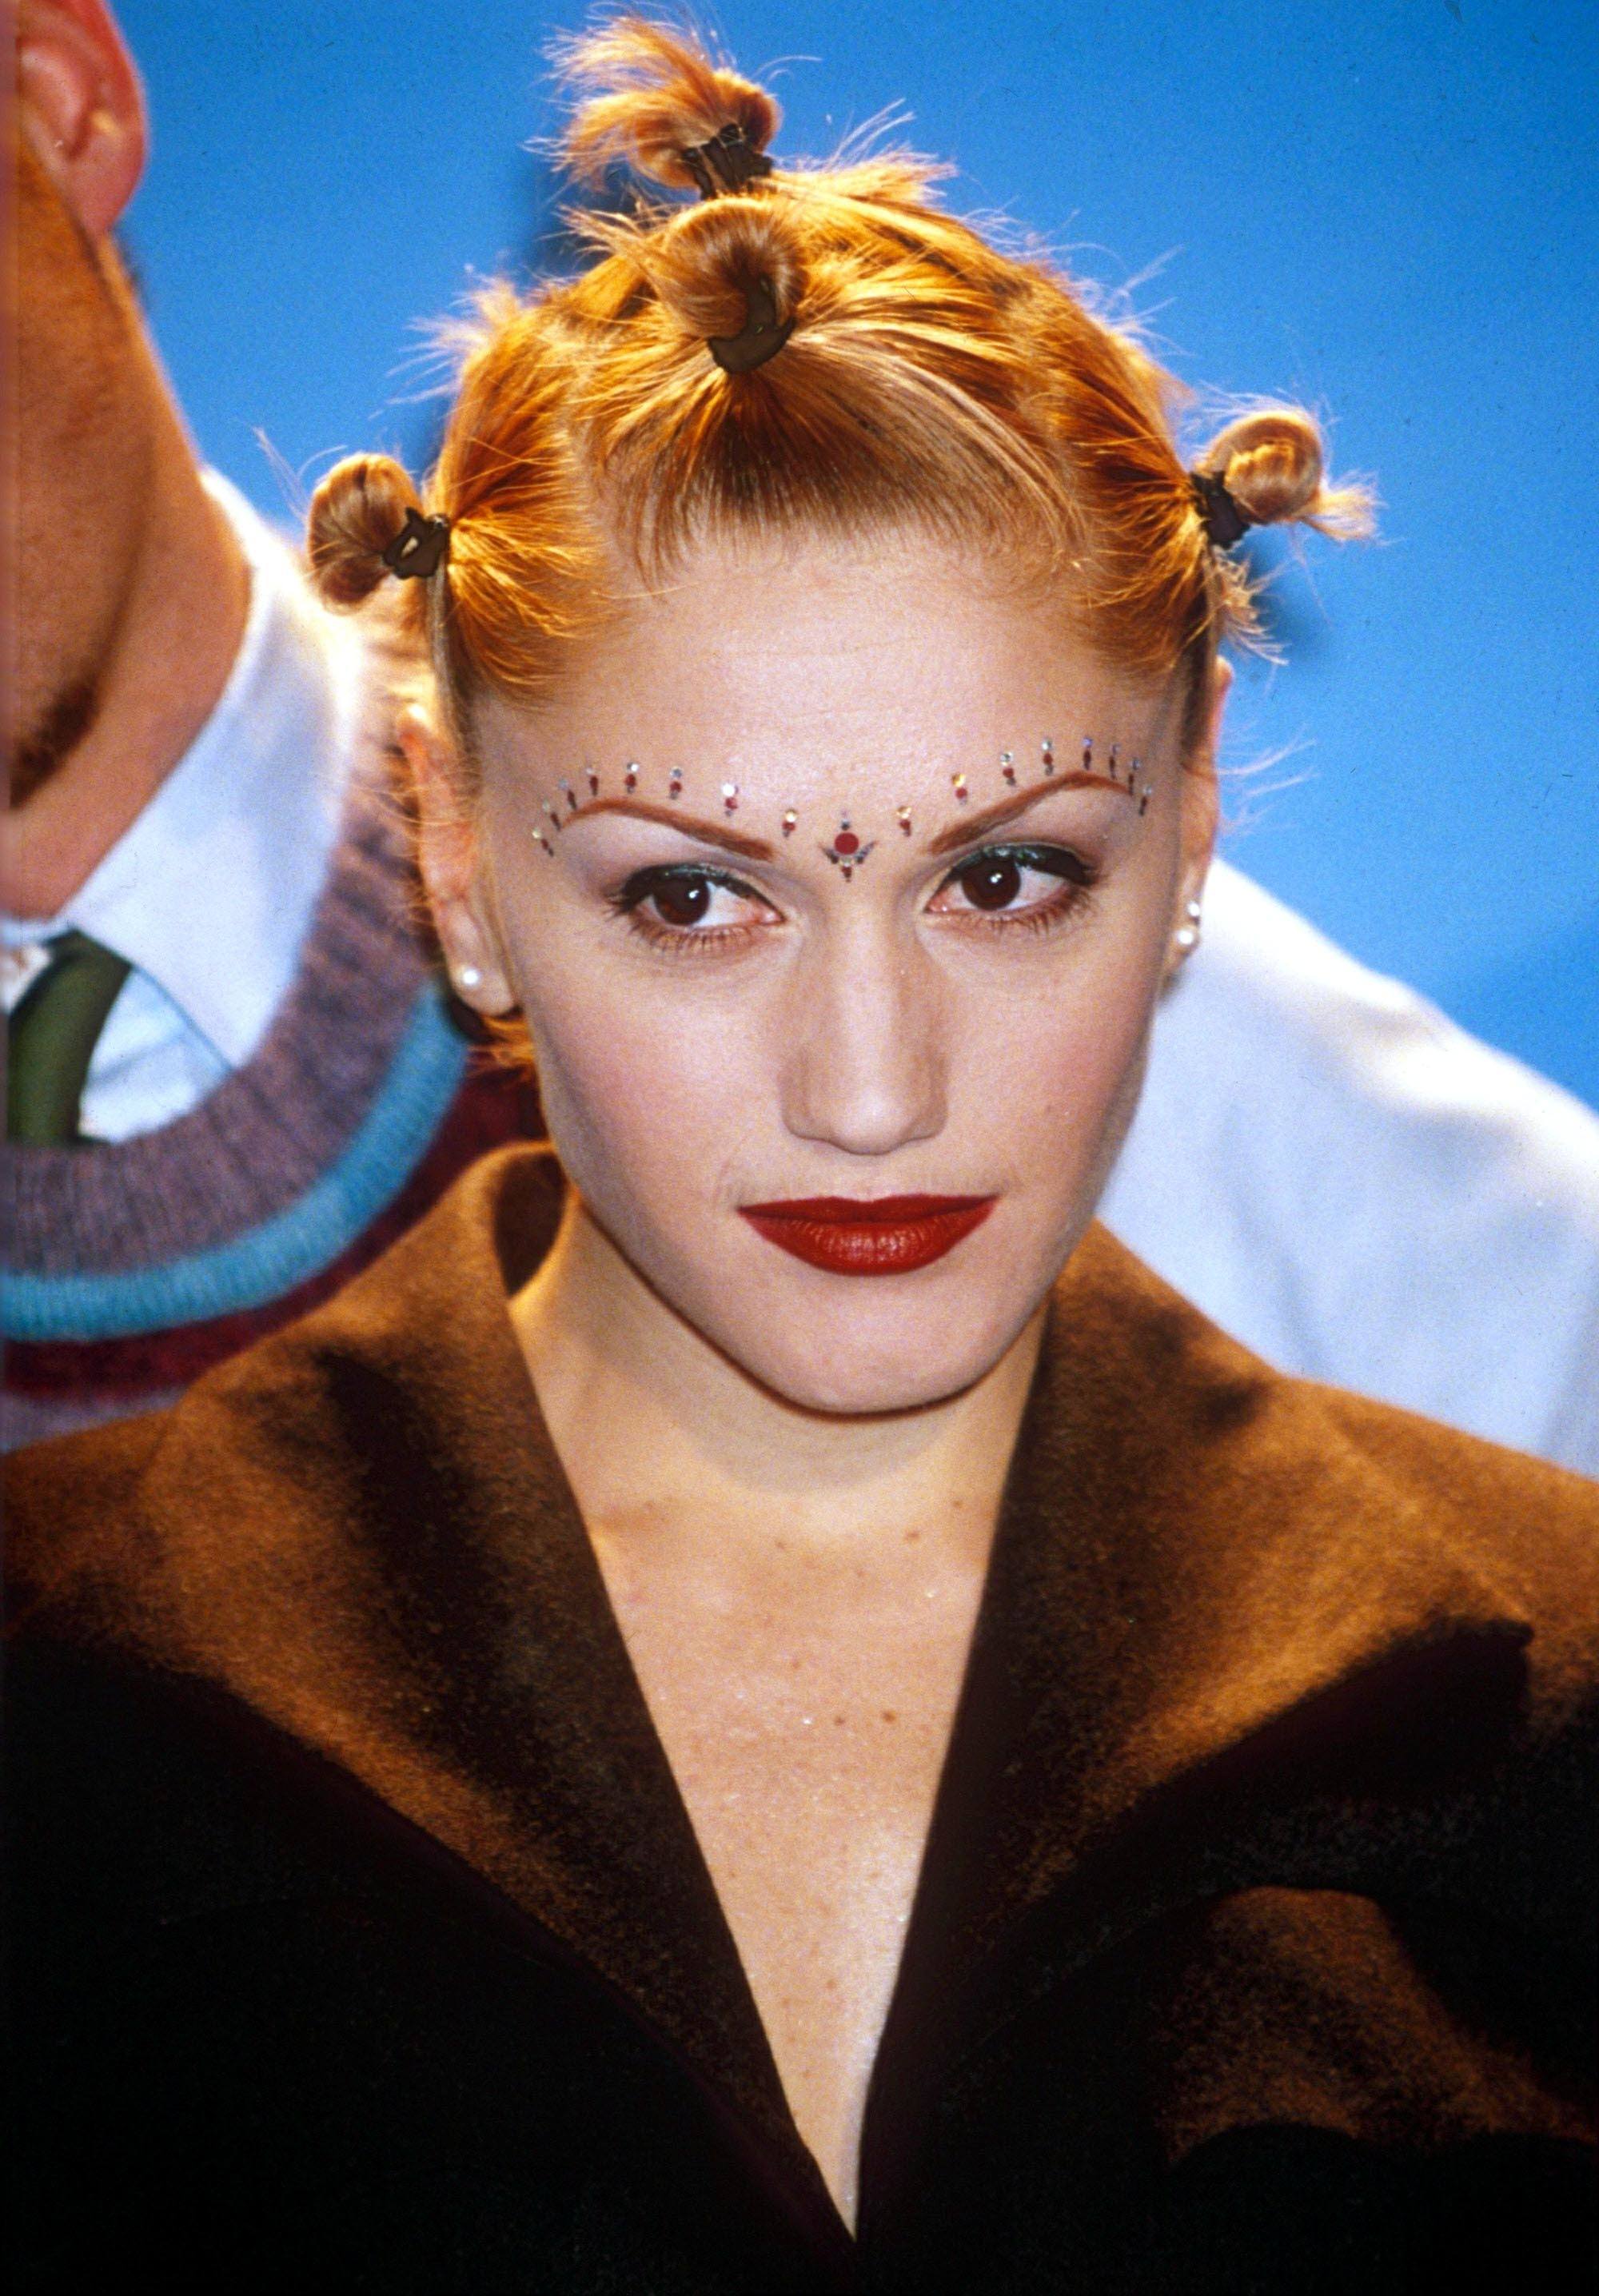 Gwen Stefani blonde bantu knots